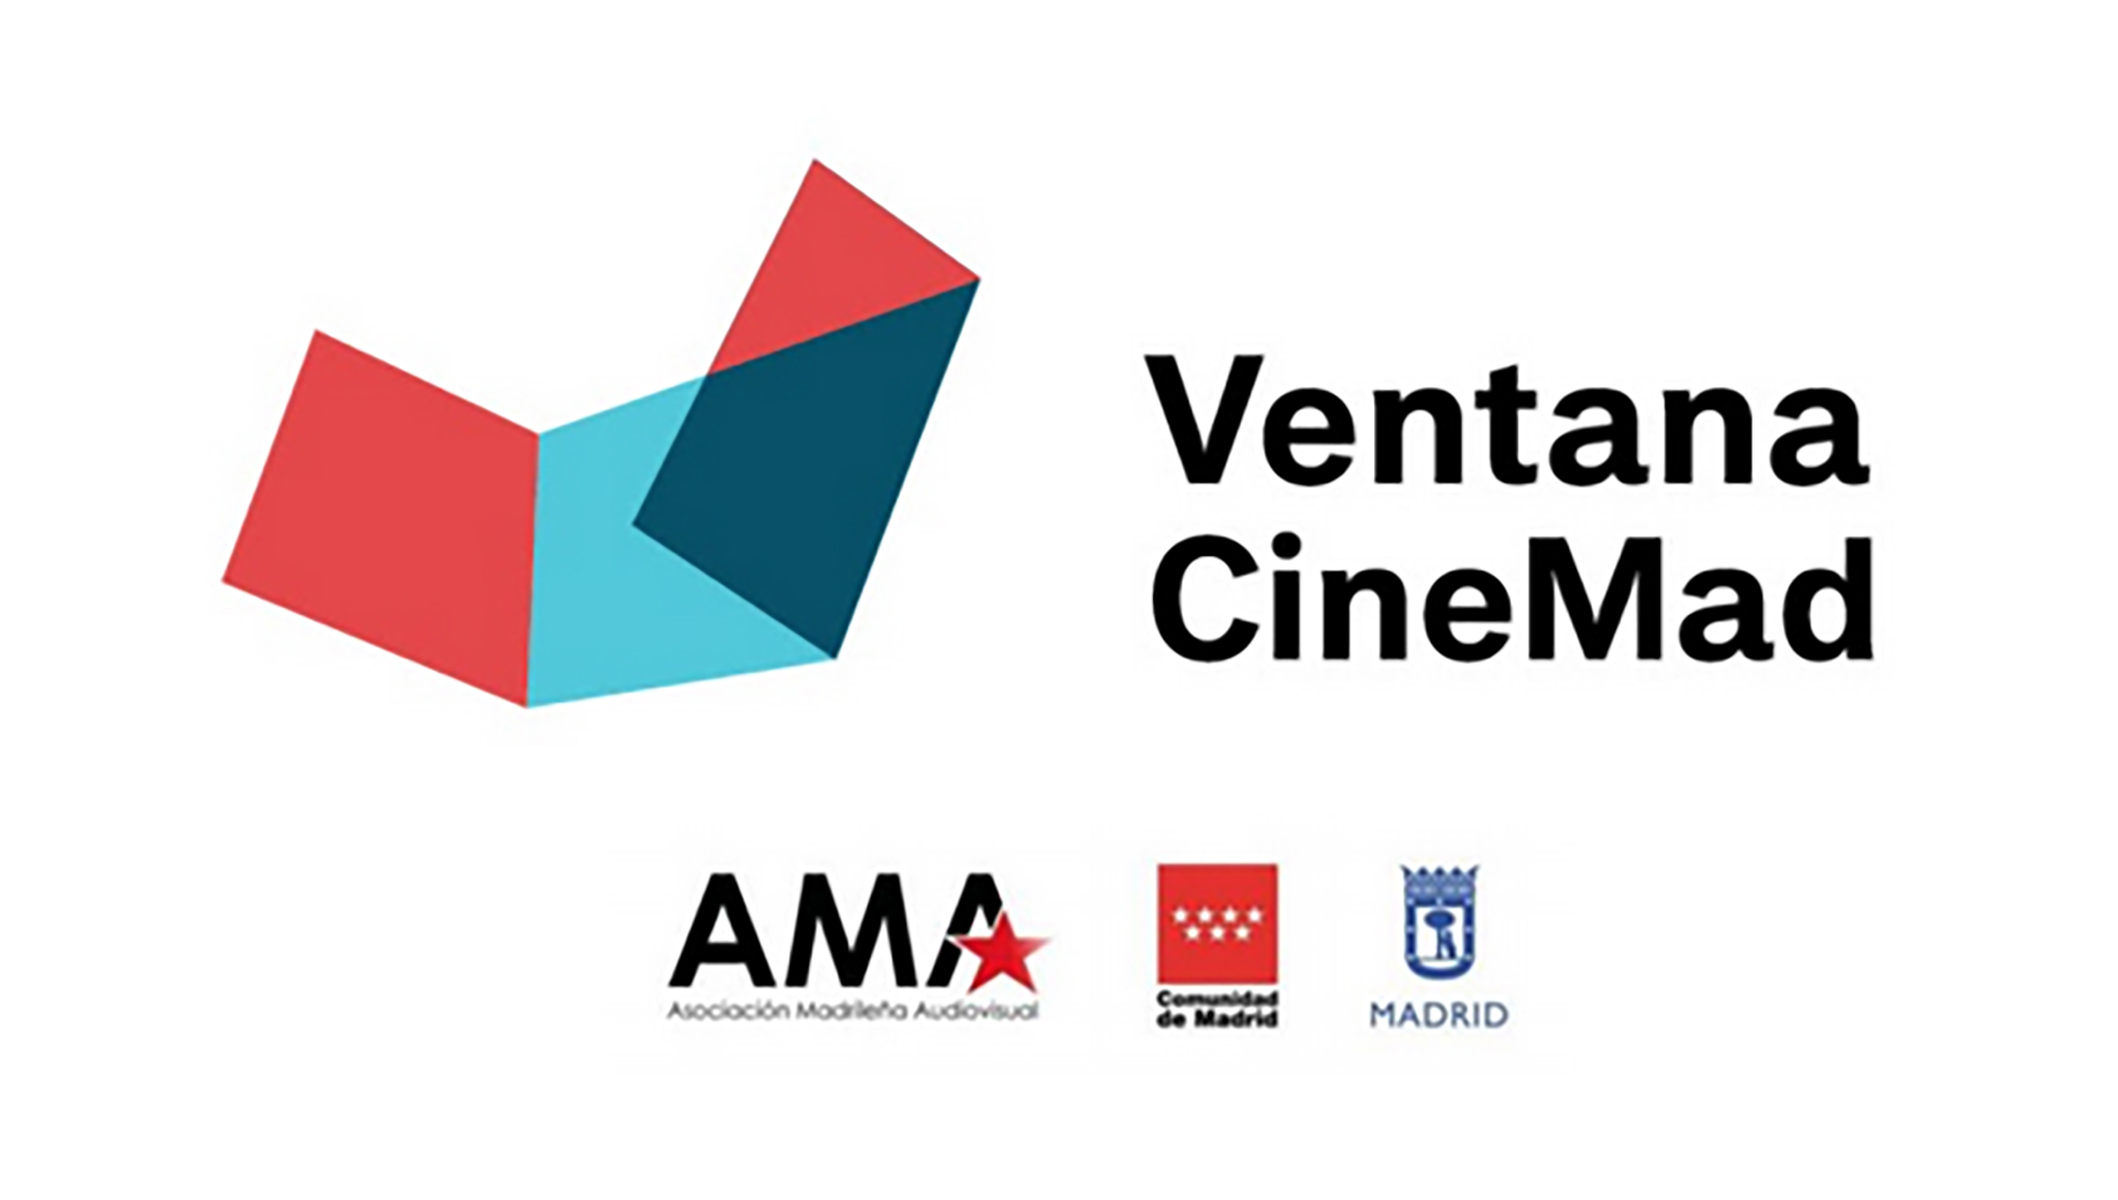 Abierta la convocatoria de participación en el Foro de Coproducción Internacional de la 6ª Ventana CineMad